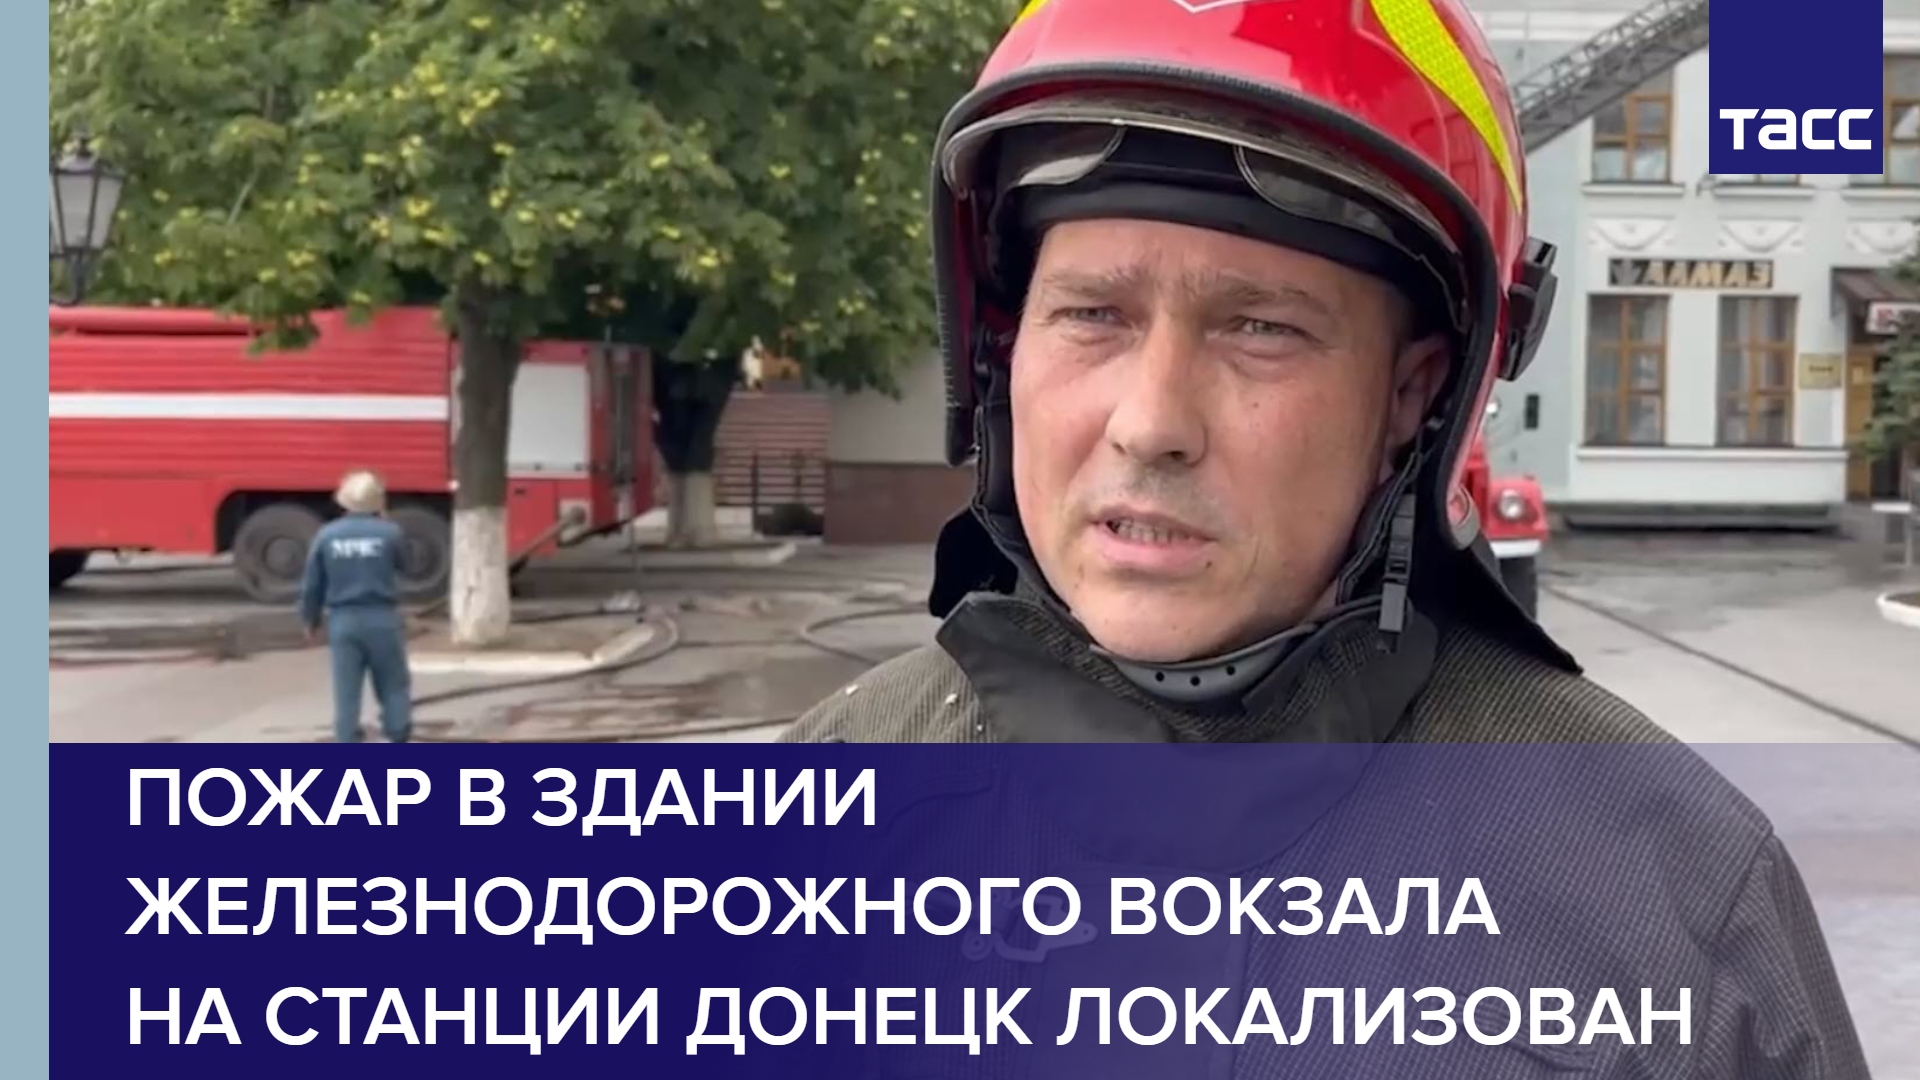 Пожар в здании железнодорожного вокзала на станции Донецк локализован на площади 900 кв. м #shorts